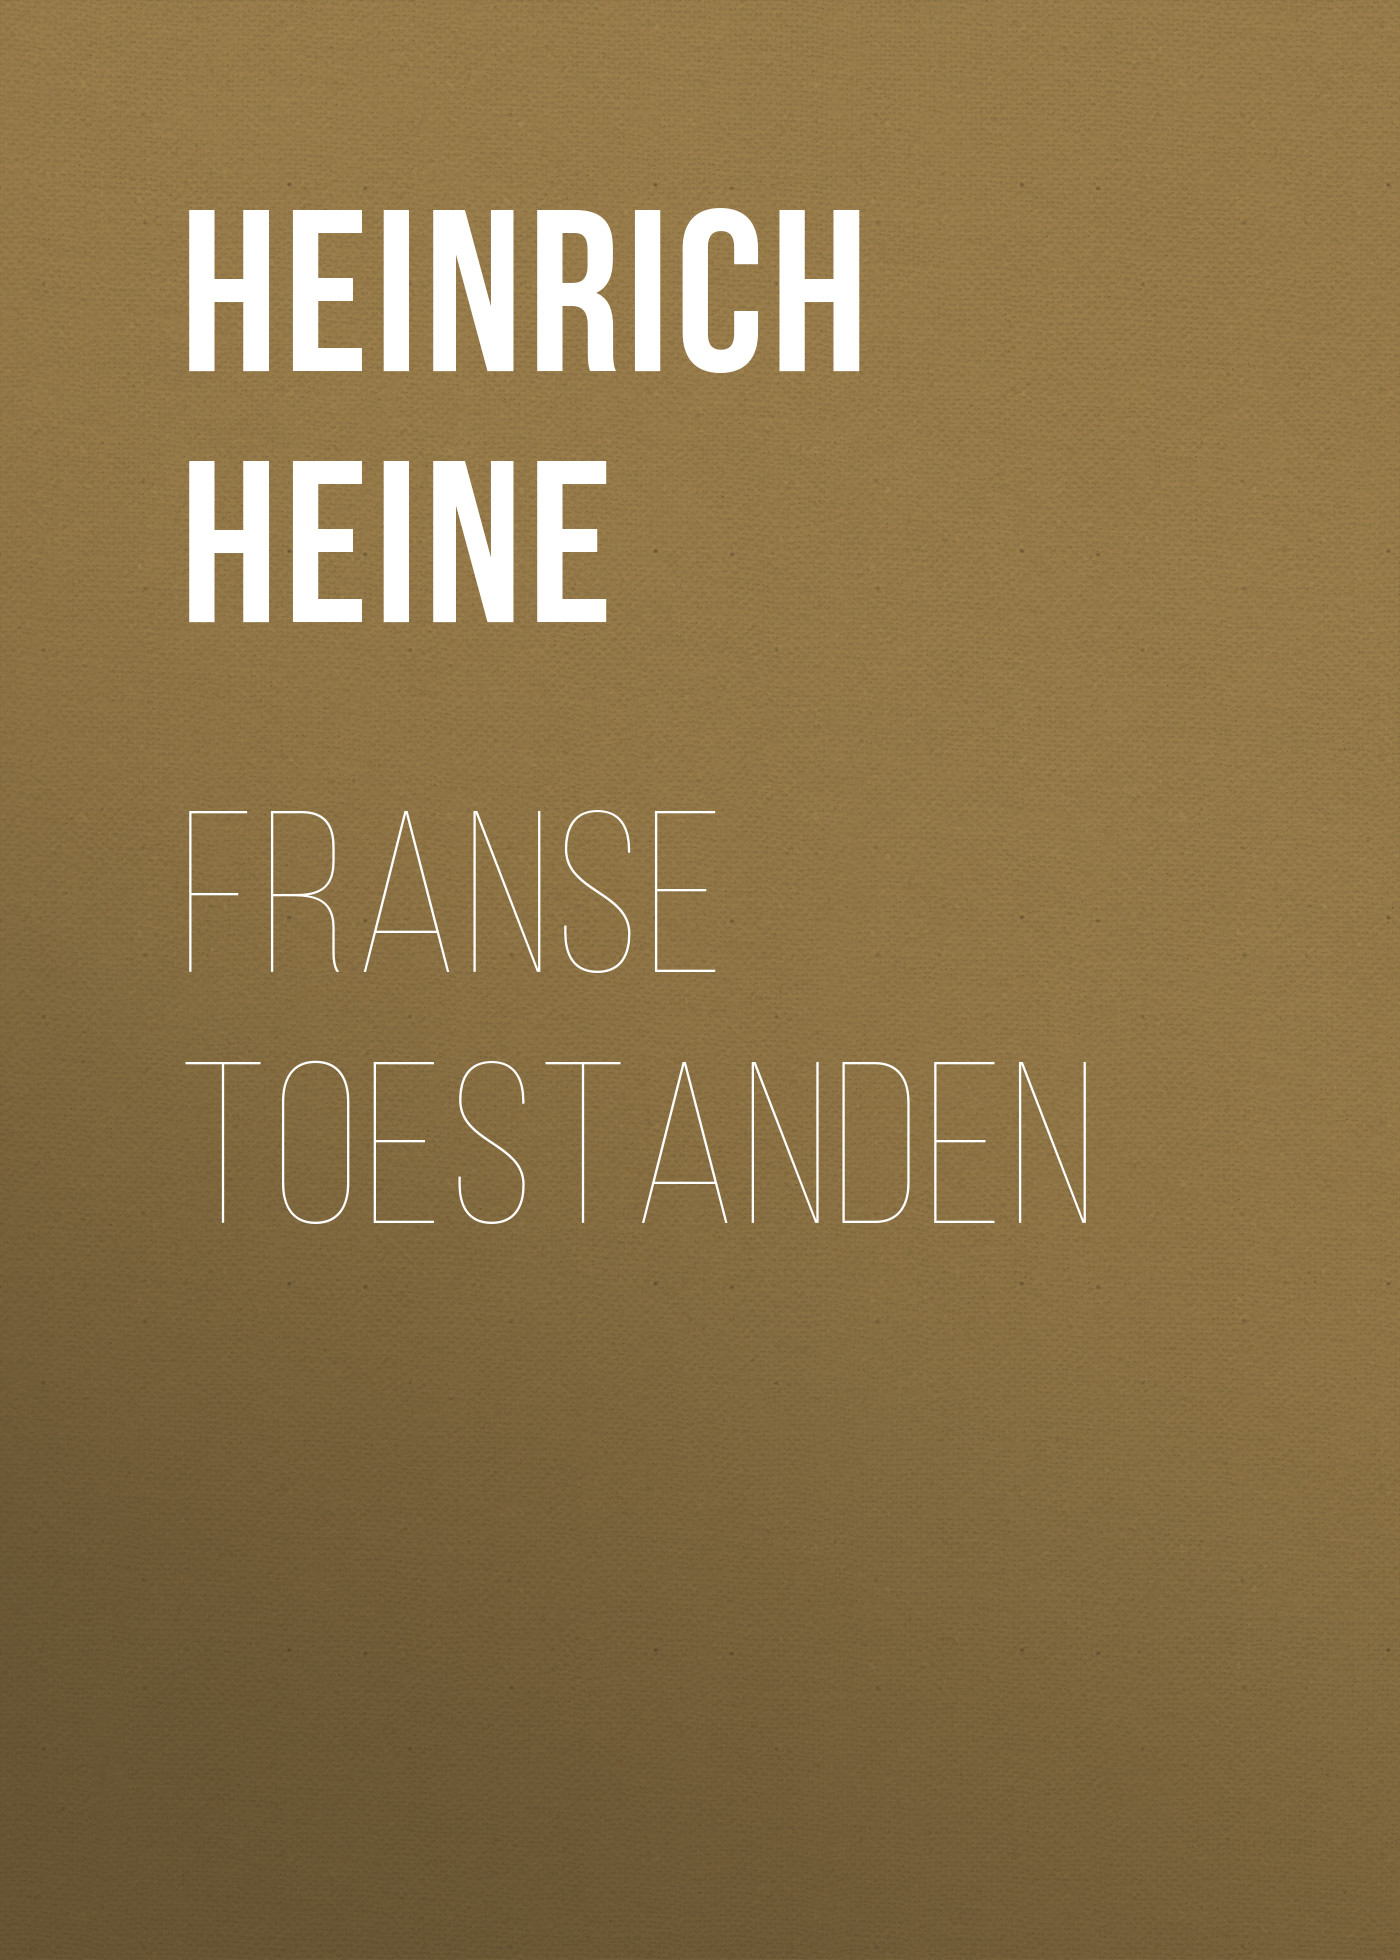 Книга Franse Toestanden из серии , созданная Генрих Гейне, может относится к жанру Зарубежная образовательная литература, Медицина. Стоимость электронной книги Franse Toestanden с идентификатором 36096653 составляет 0 руб.